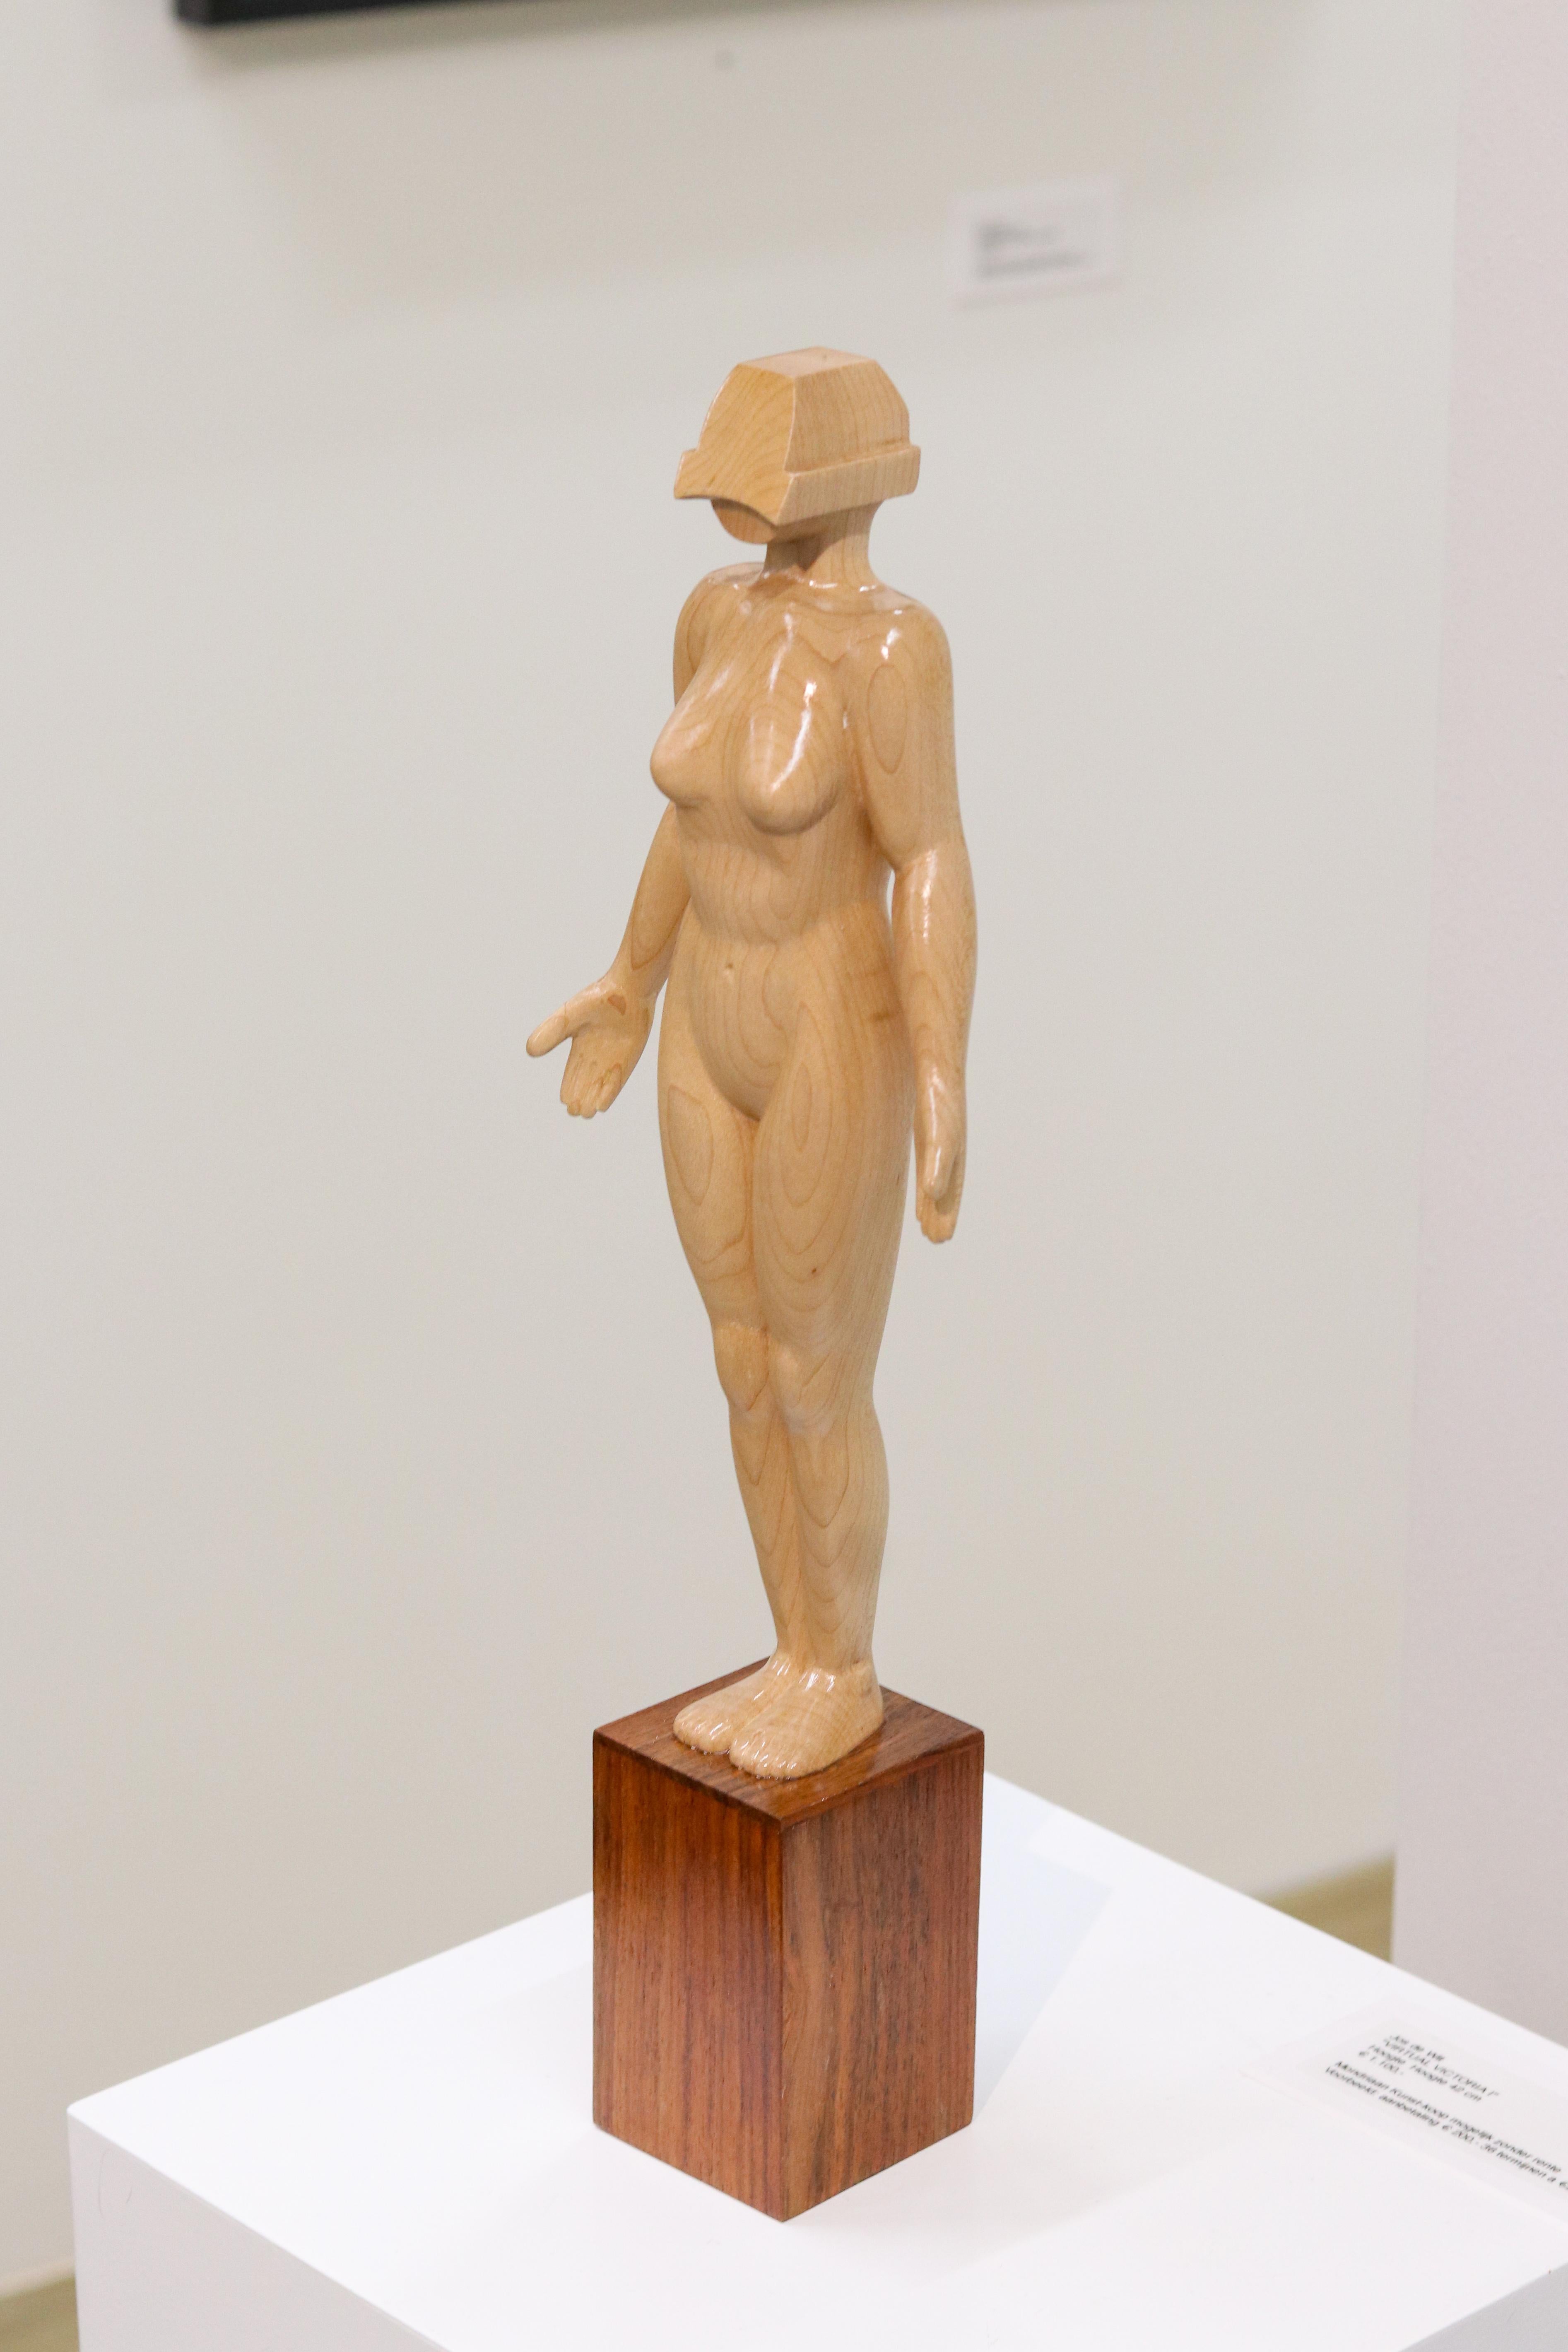 Jos de Wit Figurative Sculpture – Virtual Victoria - Zeitgenössische Holzskulptur einer nackten Frau aus dem 21. Jahrhundert